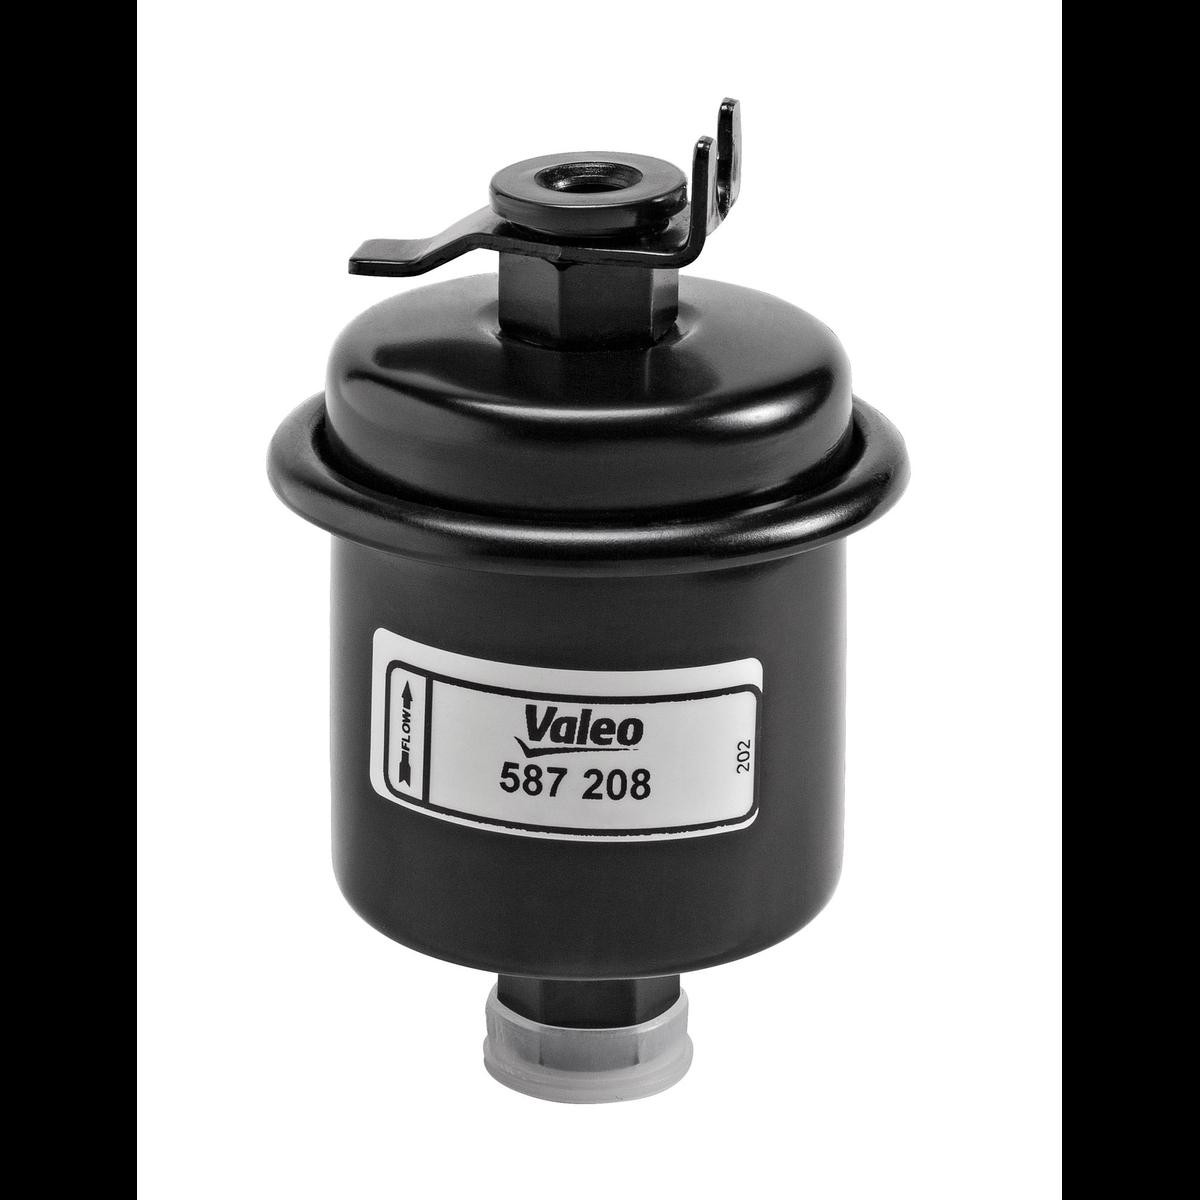 VALEO 587208 Fuel filter 2330019475